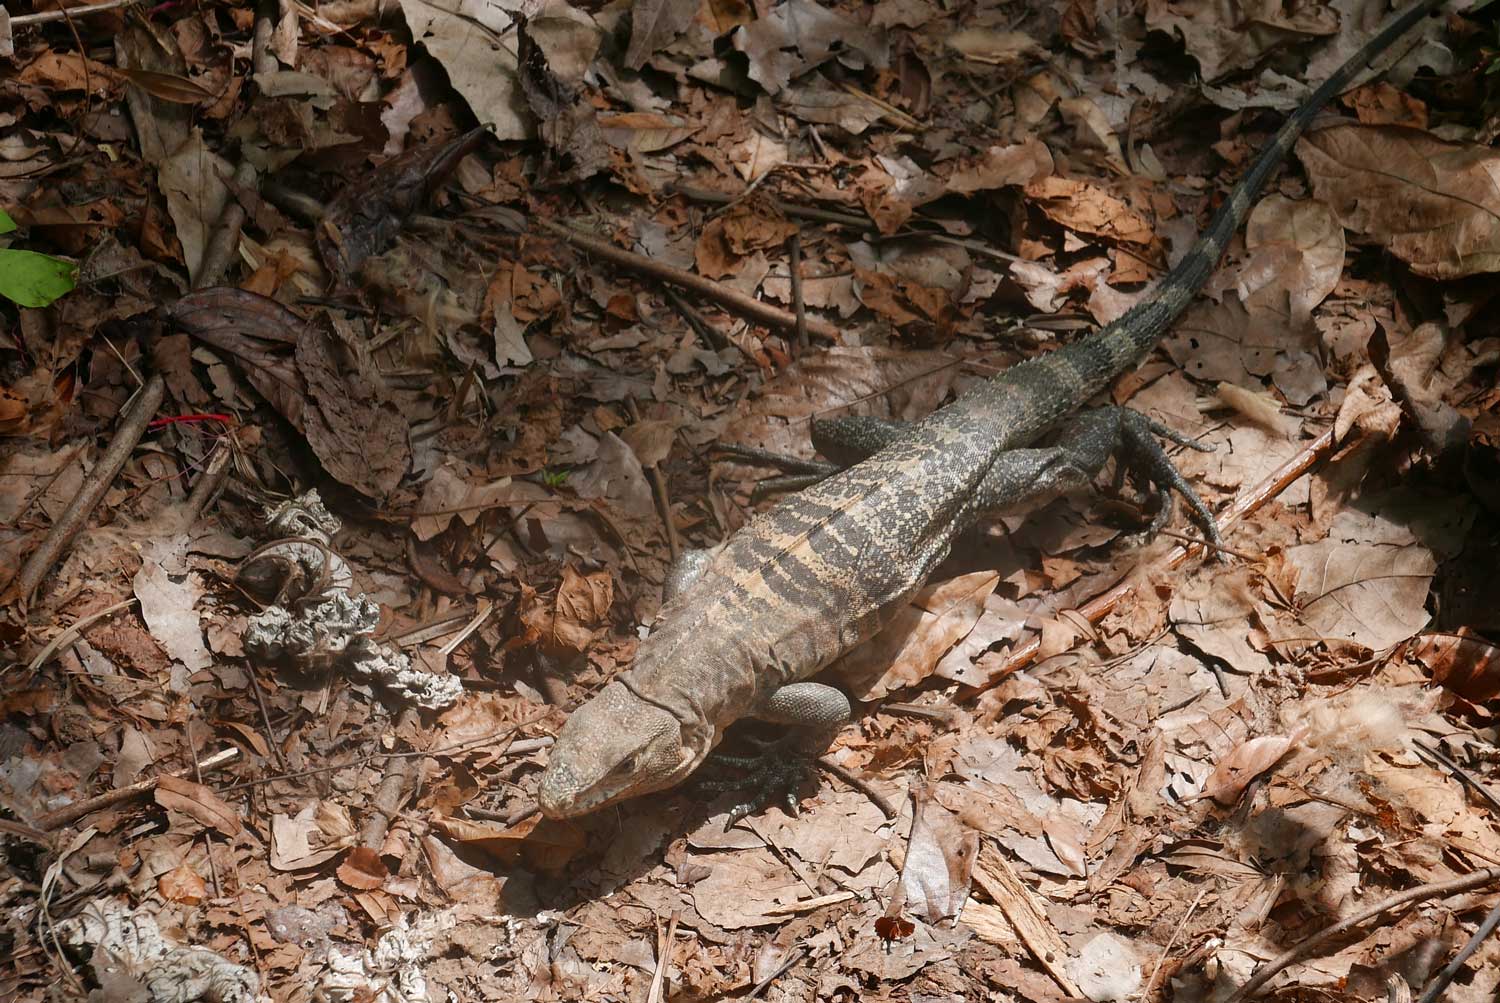 Iguana in Manuel Antonio national park